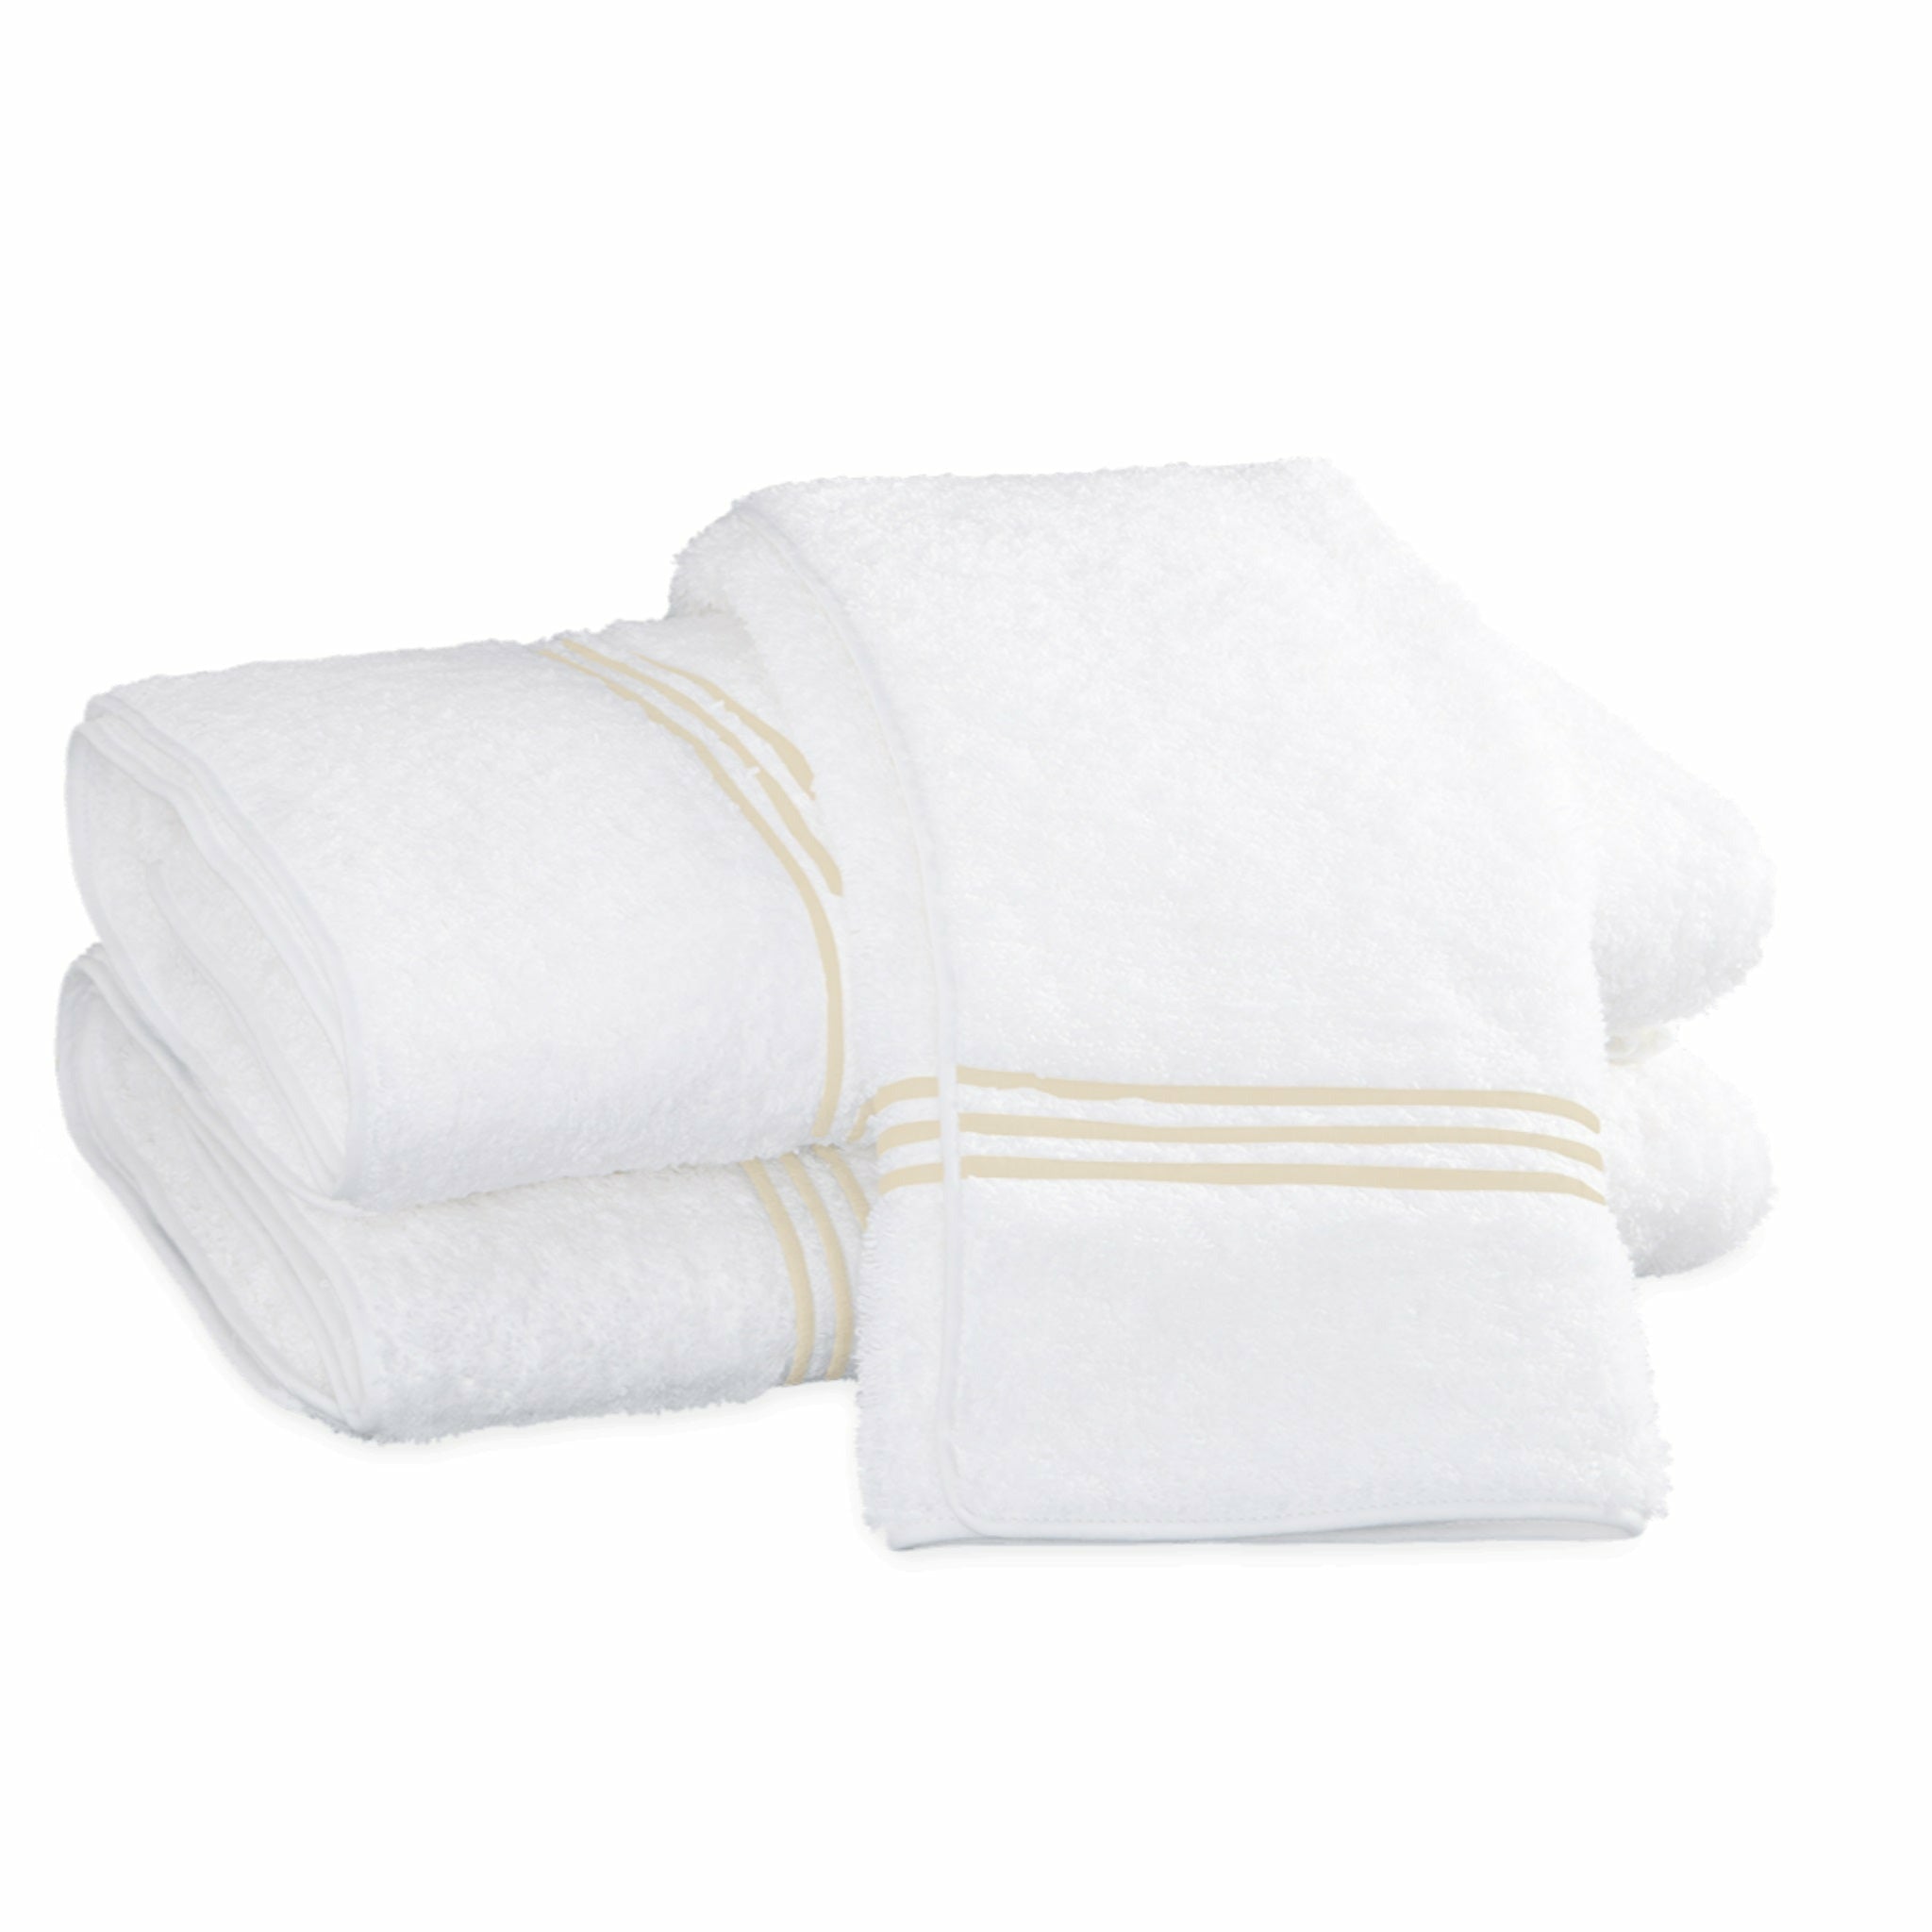 https://flandb.com/cdn/shop/products/Matouk-Bel-Tempo-Bath-Towels-Ivory.jpg?v=1660866794